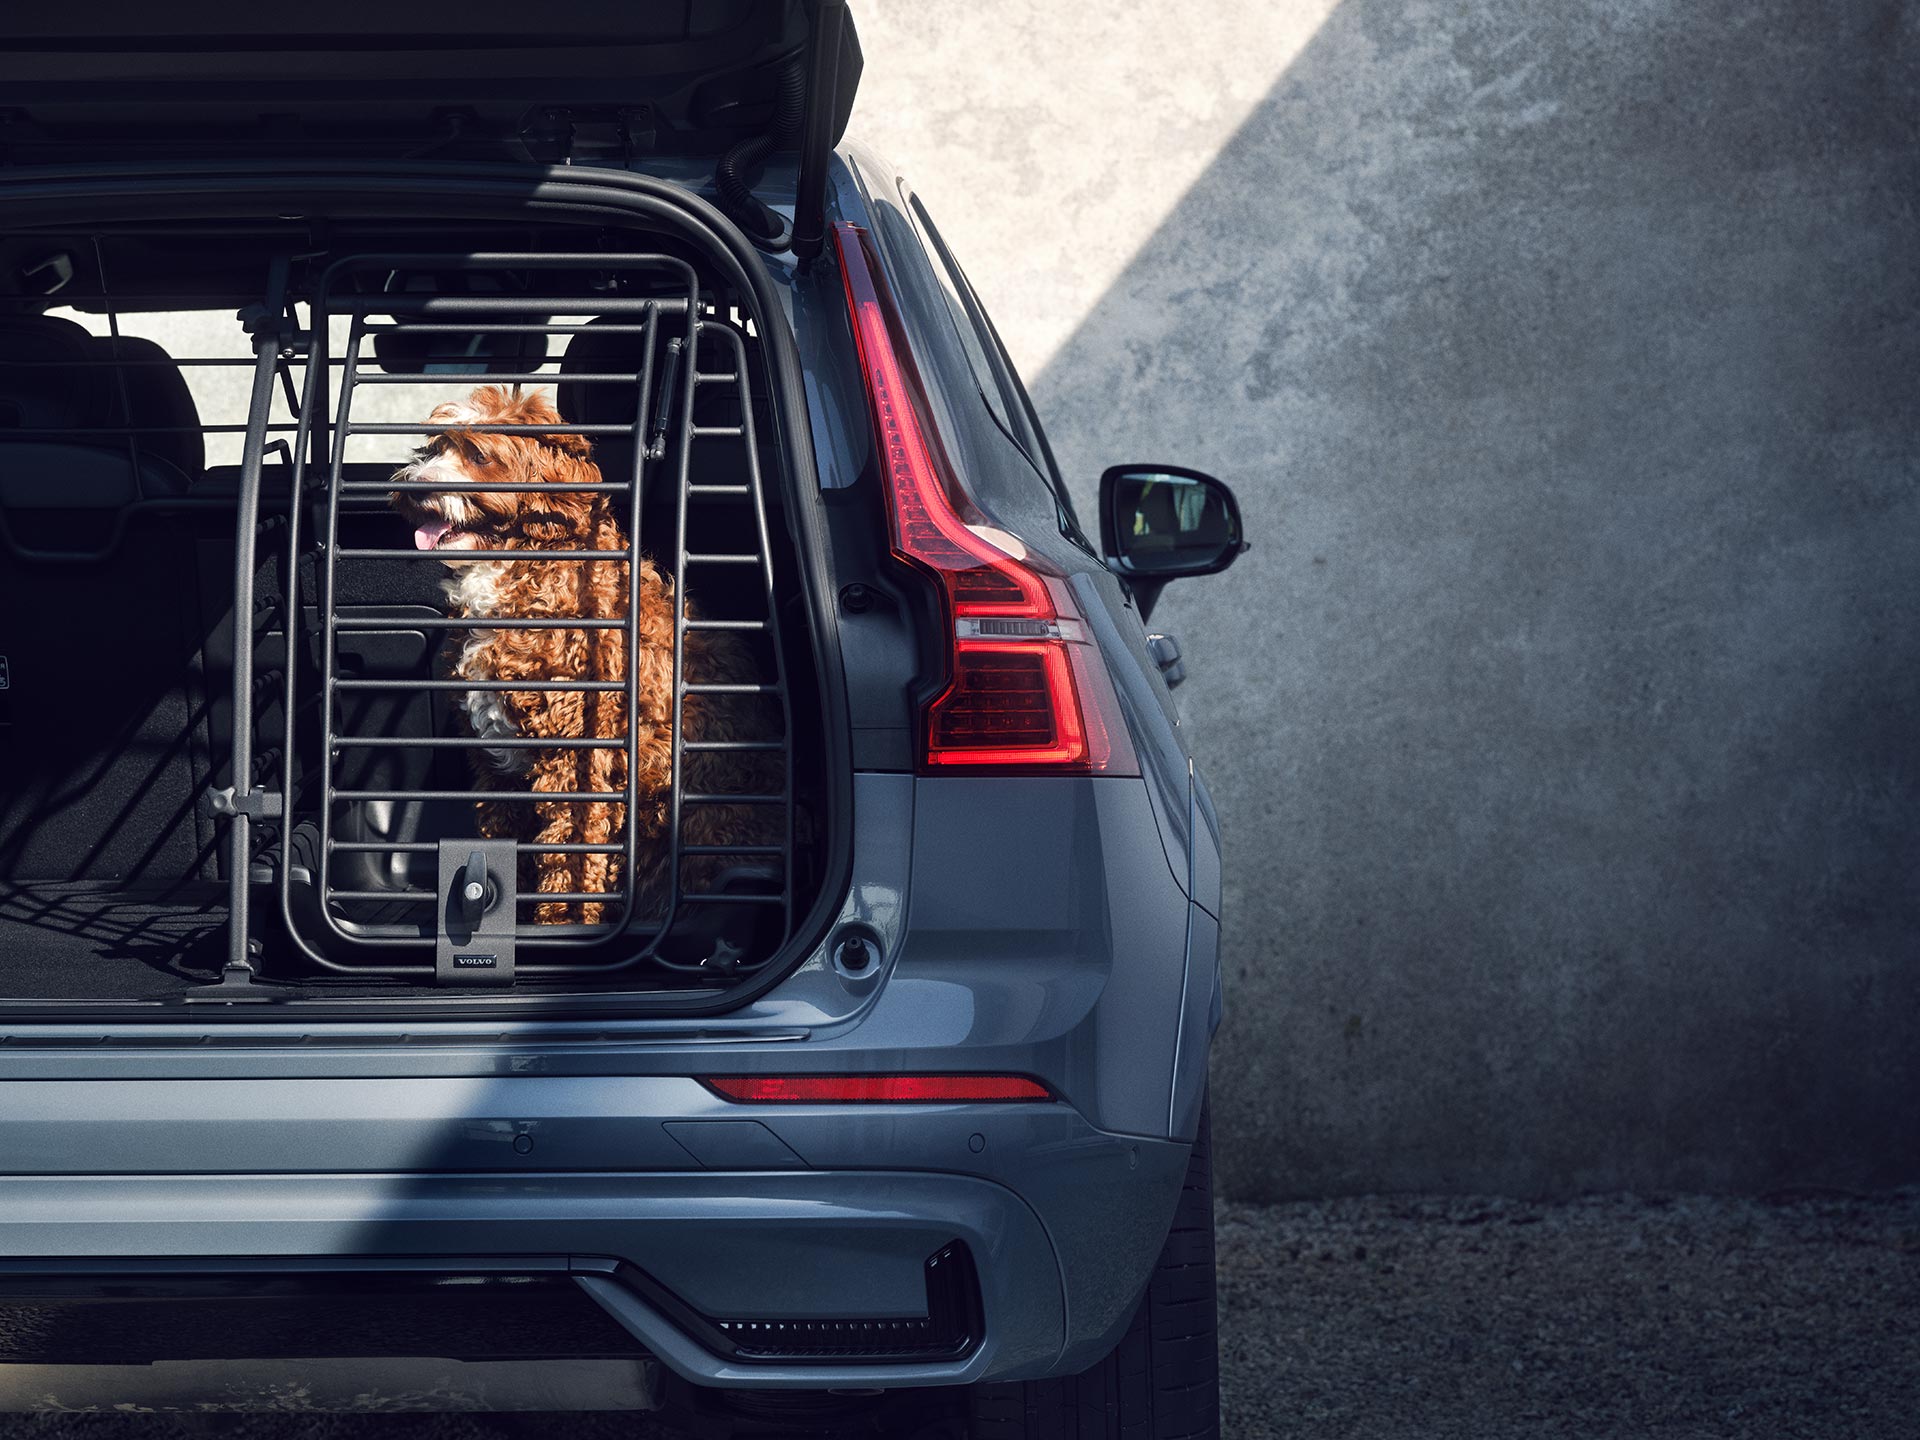 Egy rozsdabarna kutya ül a biztonságos kutyaketrecben. Ezt a tartozékot kifejezetten a Volvo gépkocsikban utazó háziállatok biztonsága és kényelme érdekében terveztük.